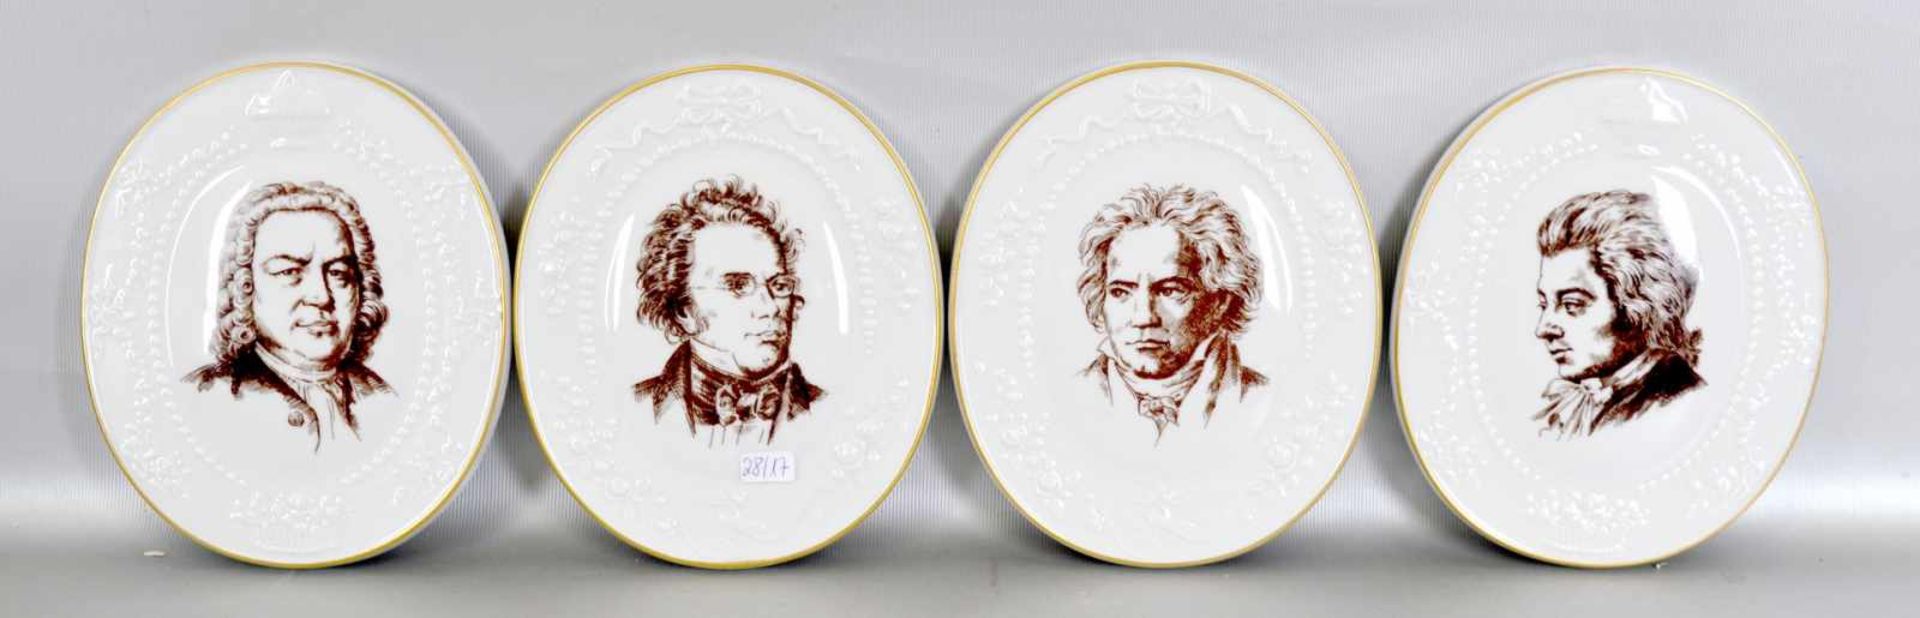 Vier Plaketten Portraits von Beethoven, Schubert, Mozart und Bach, oval, mit Ranken verziert,